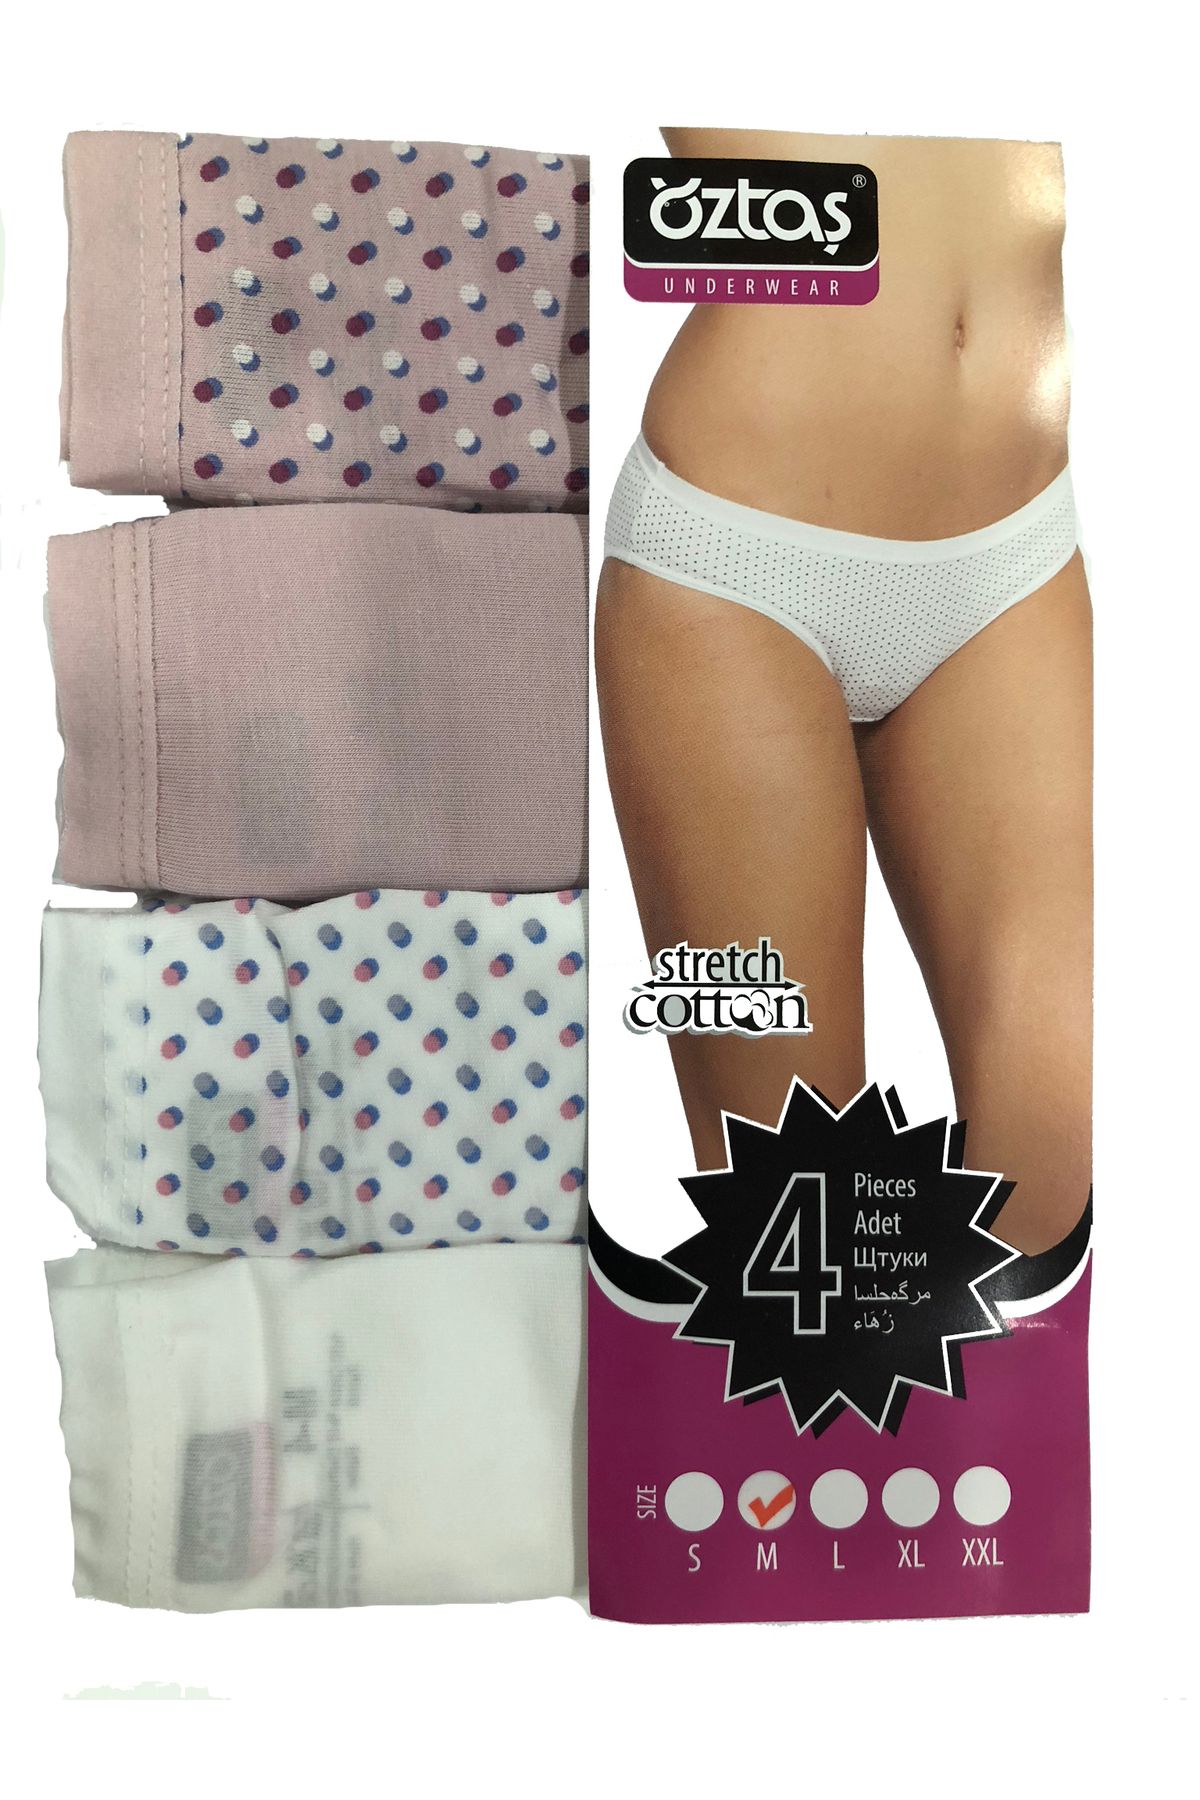 Öztaş Underwear Öztaş 2750 Kadın Dantelli Bikini Külot 4'lü Paket